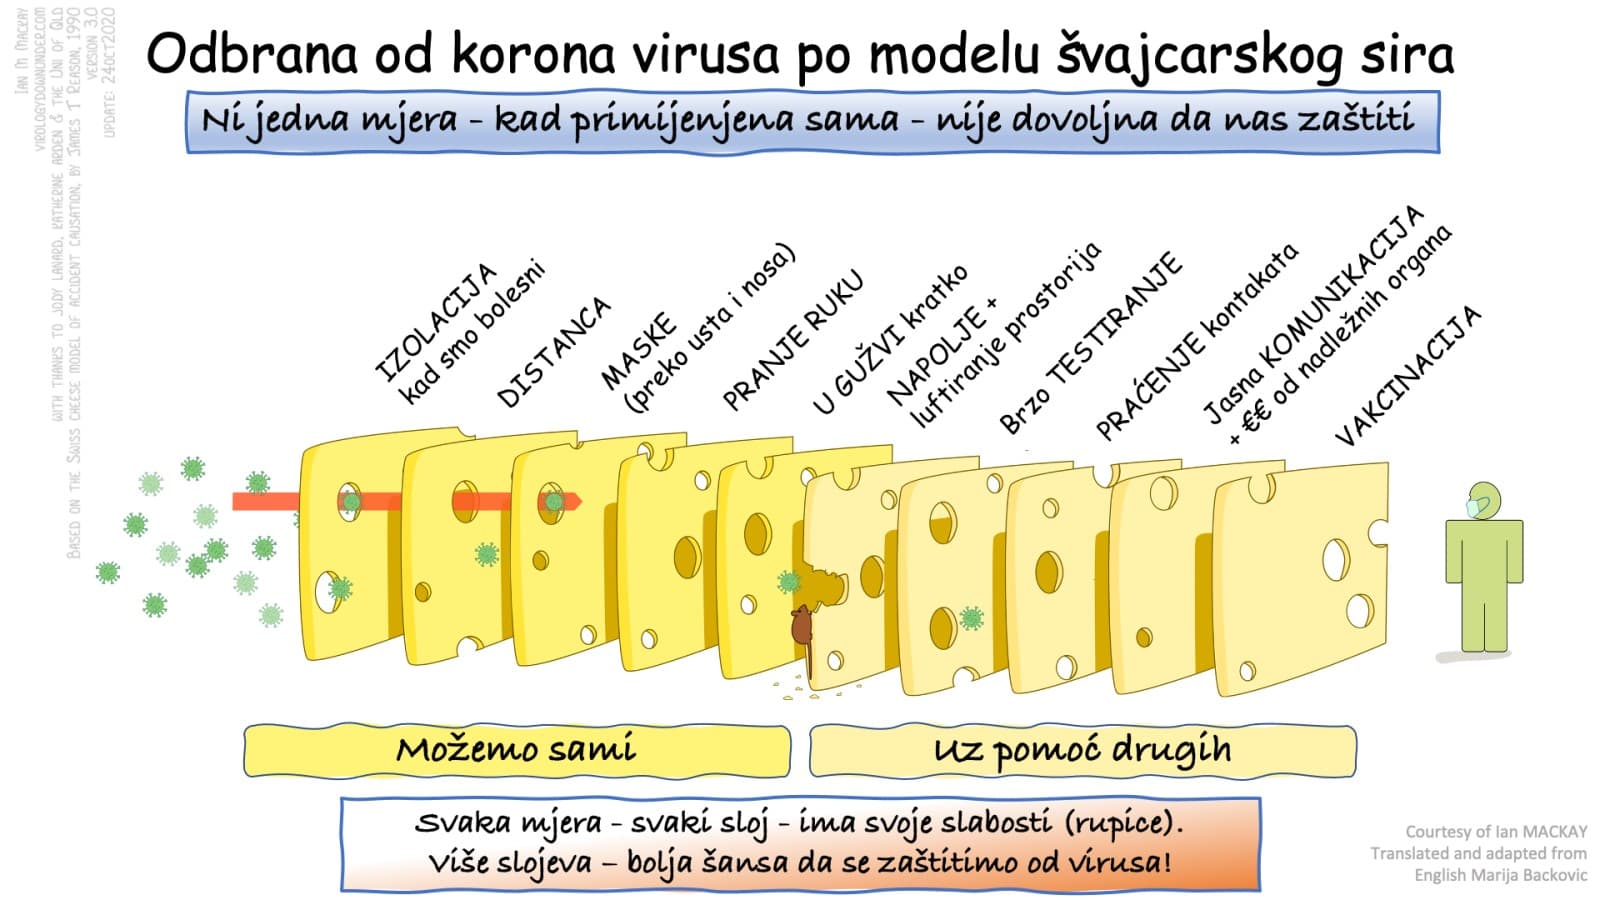 Jednostavno izvodljivo: Odbrana od koronavirusa po modelu švajcarskog sira